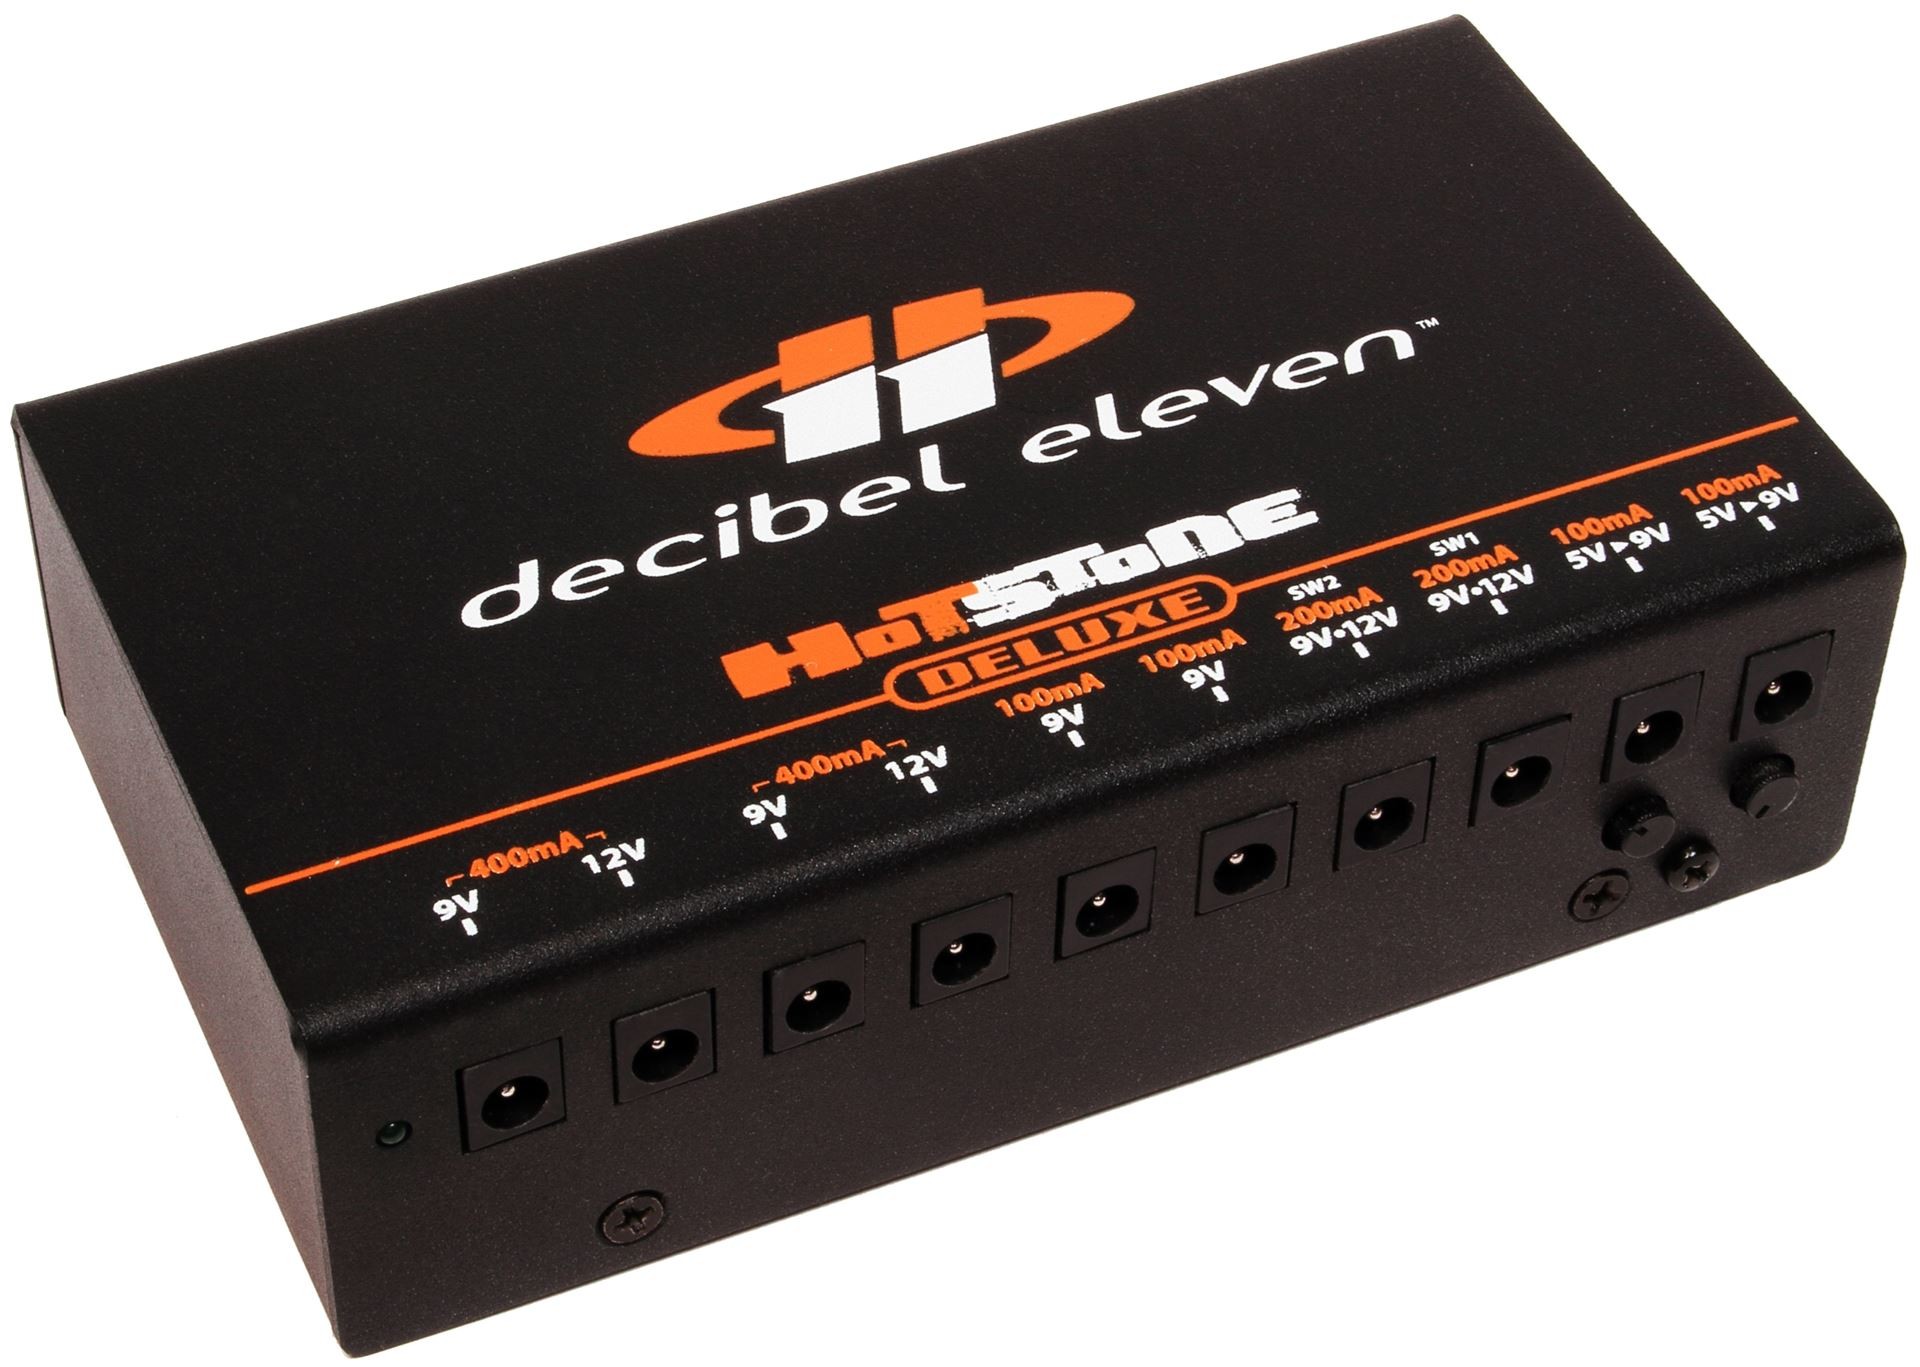 Decibel Eleven Hot Stone Deluxe